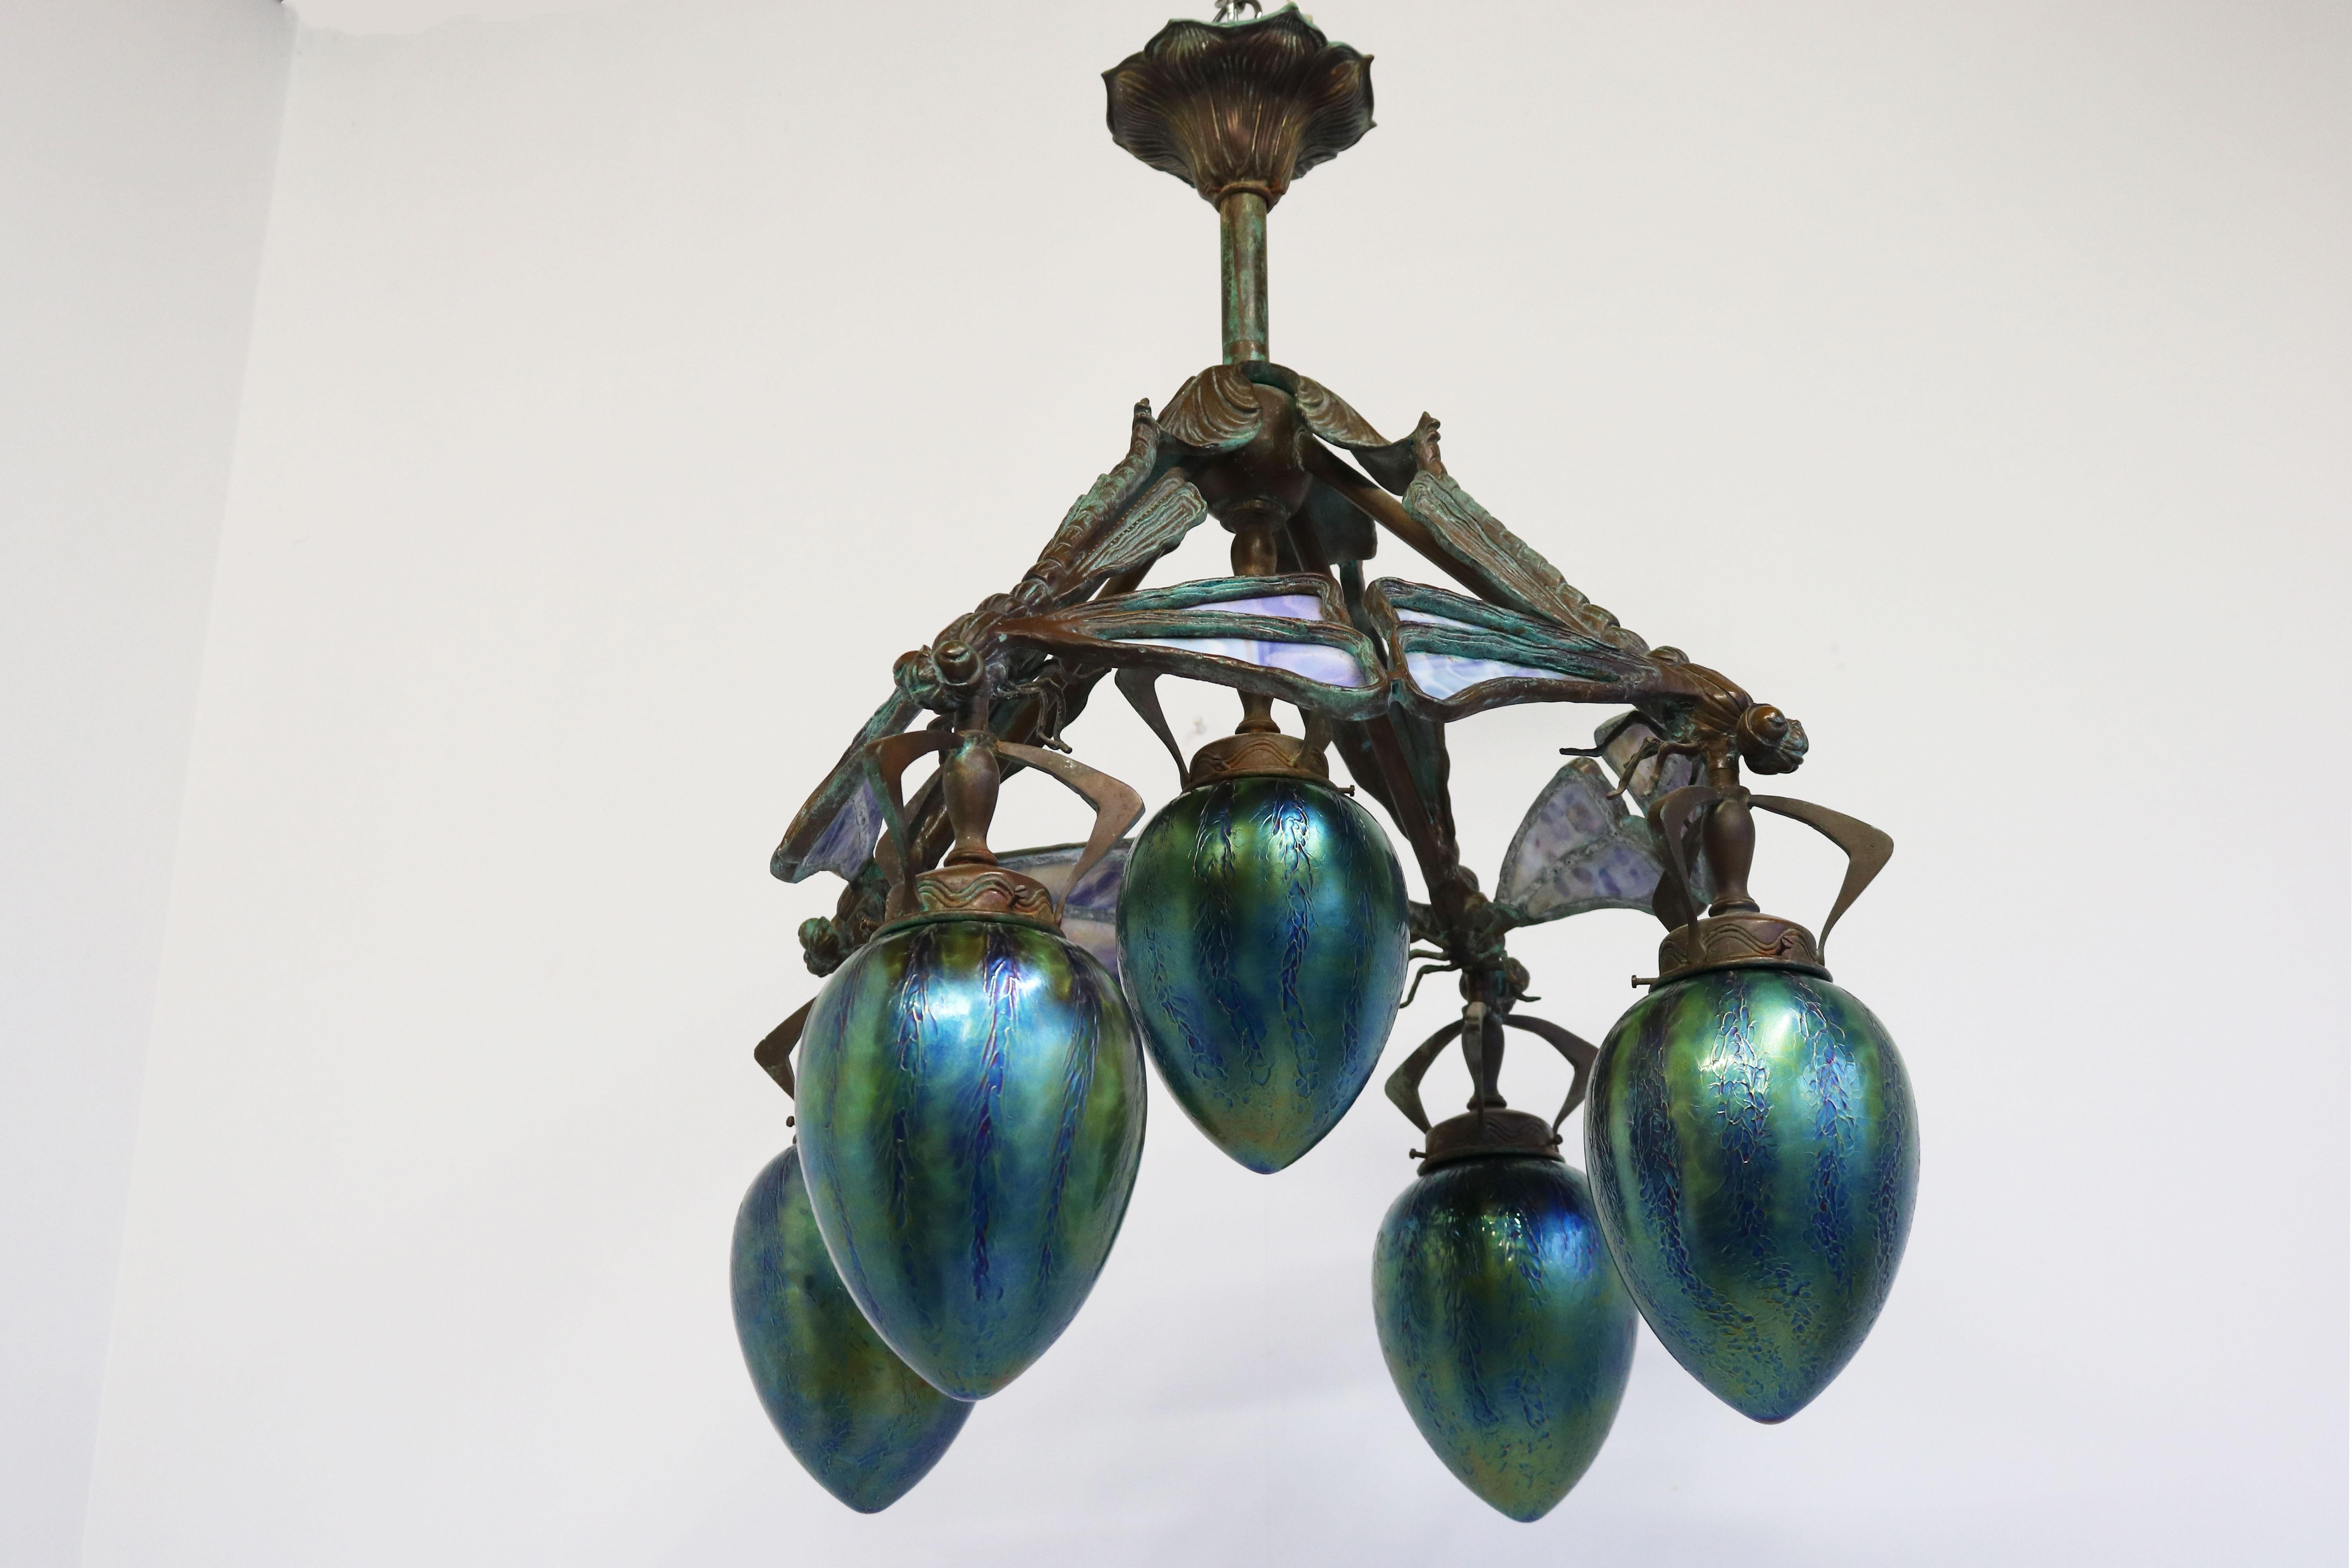 French Art Nouveau dragonfly chandelier 1900 Jugendstil Bronze Iridescent Glass 16